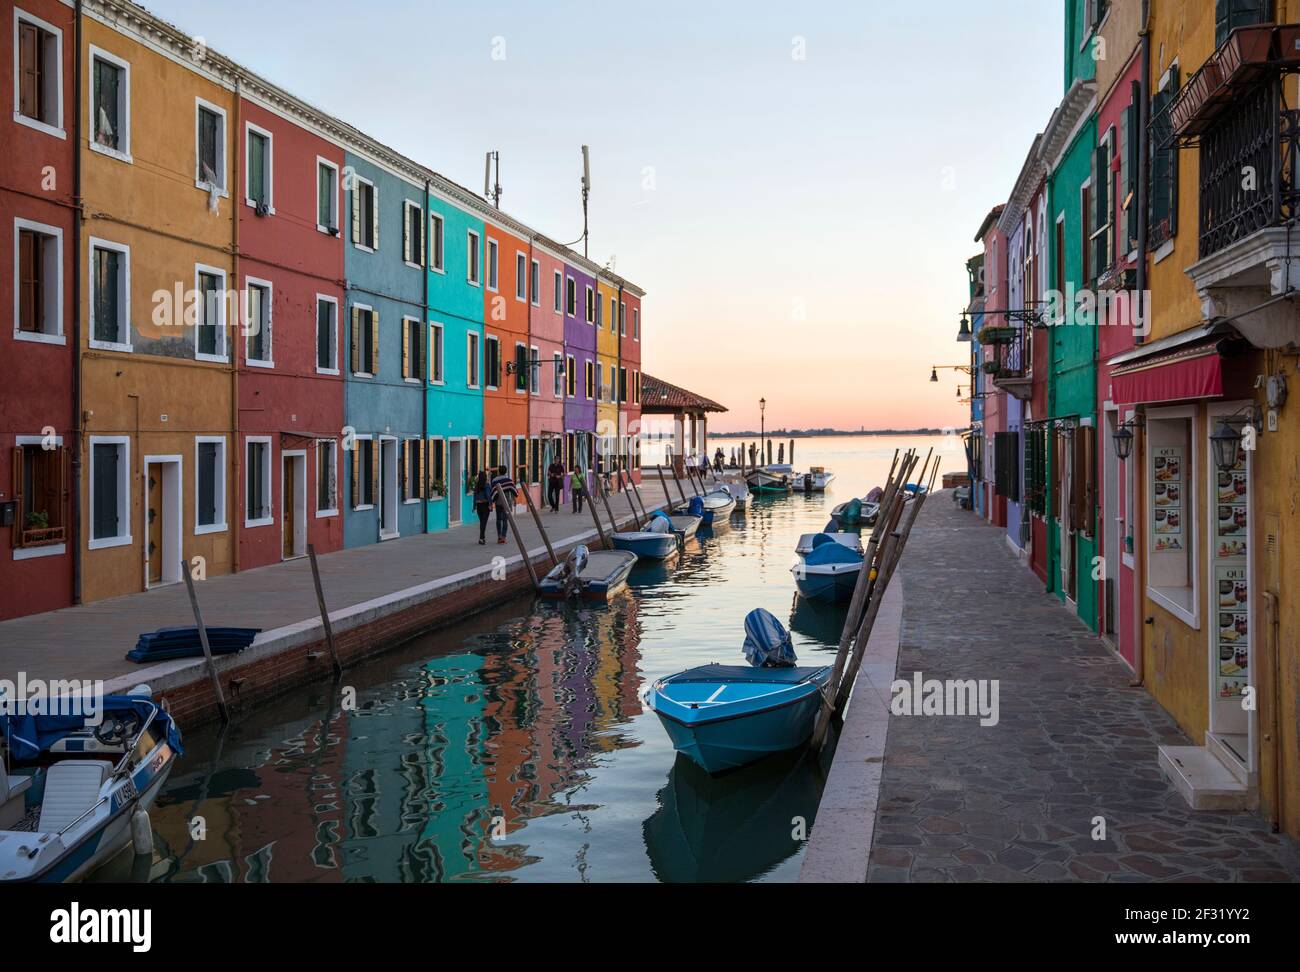 Italia, Venezia, Burano, edifici colorati che costeggiano un canale. Burano era un'isola di pescatori ed era nota anche per il merletto. Foto Stock